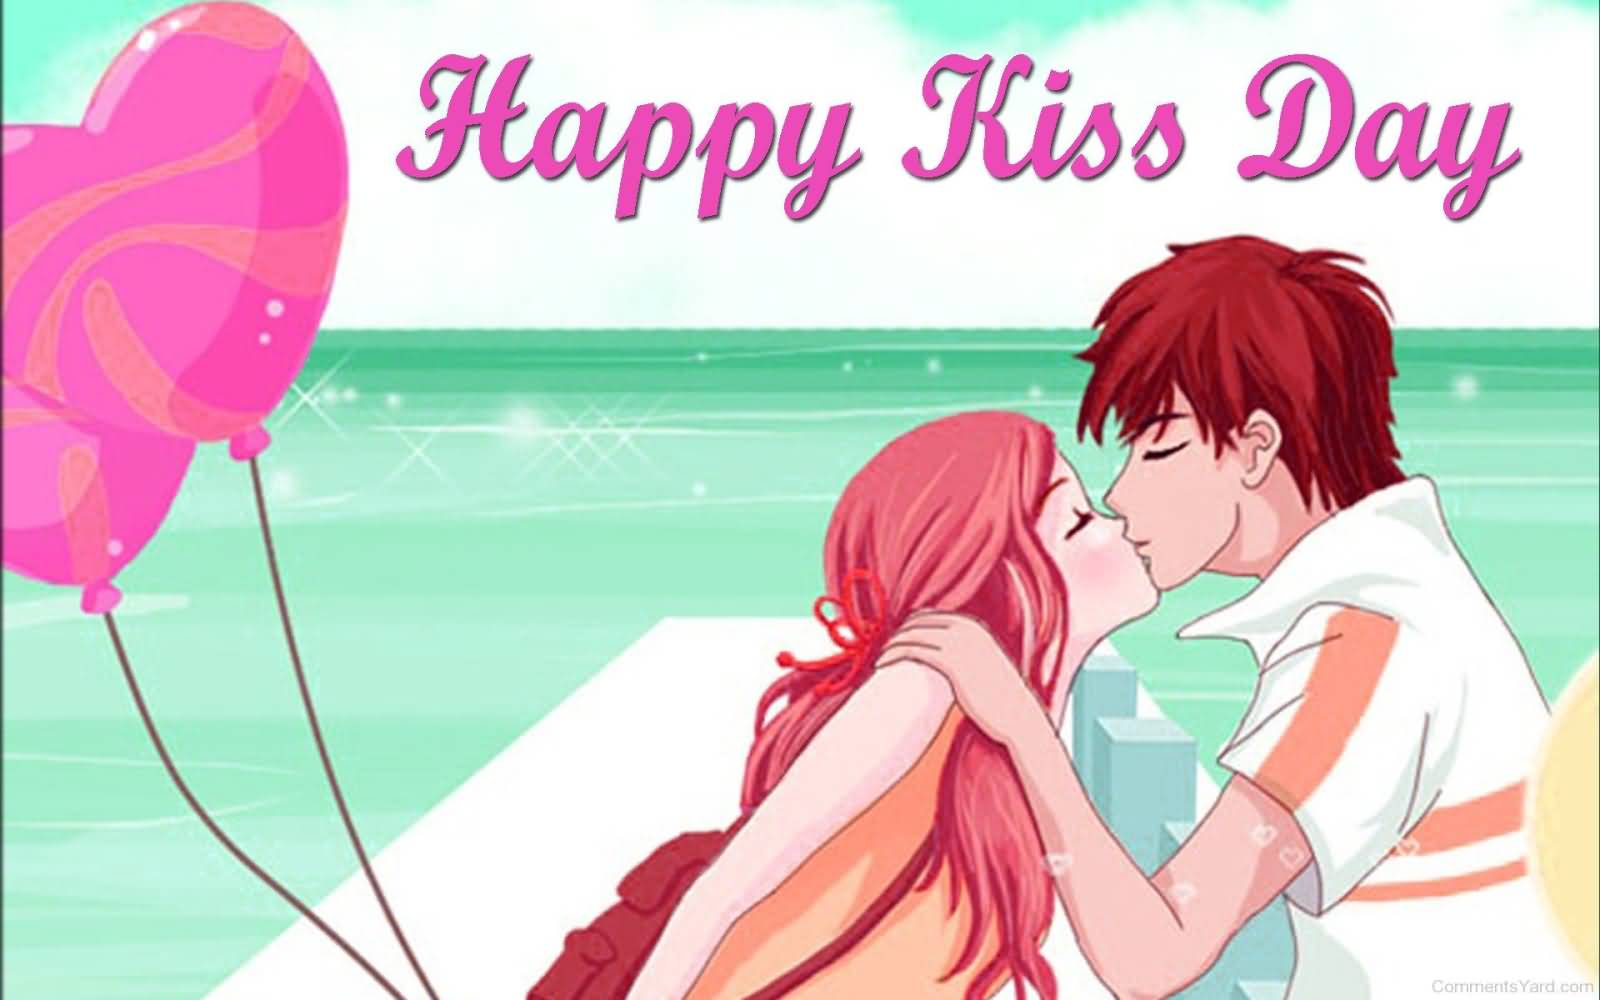 Happy Kiss Day 2017 Anime Couple On Beach